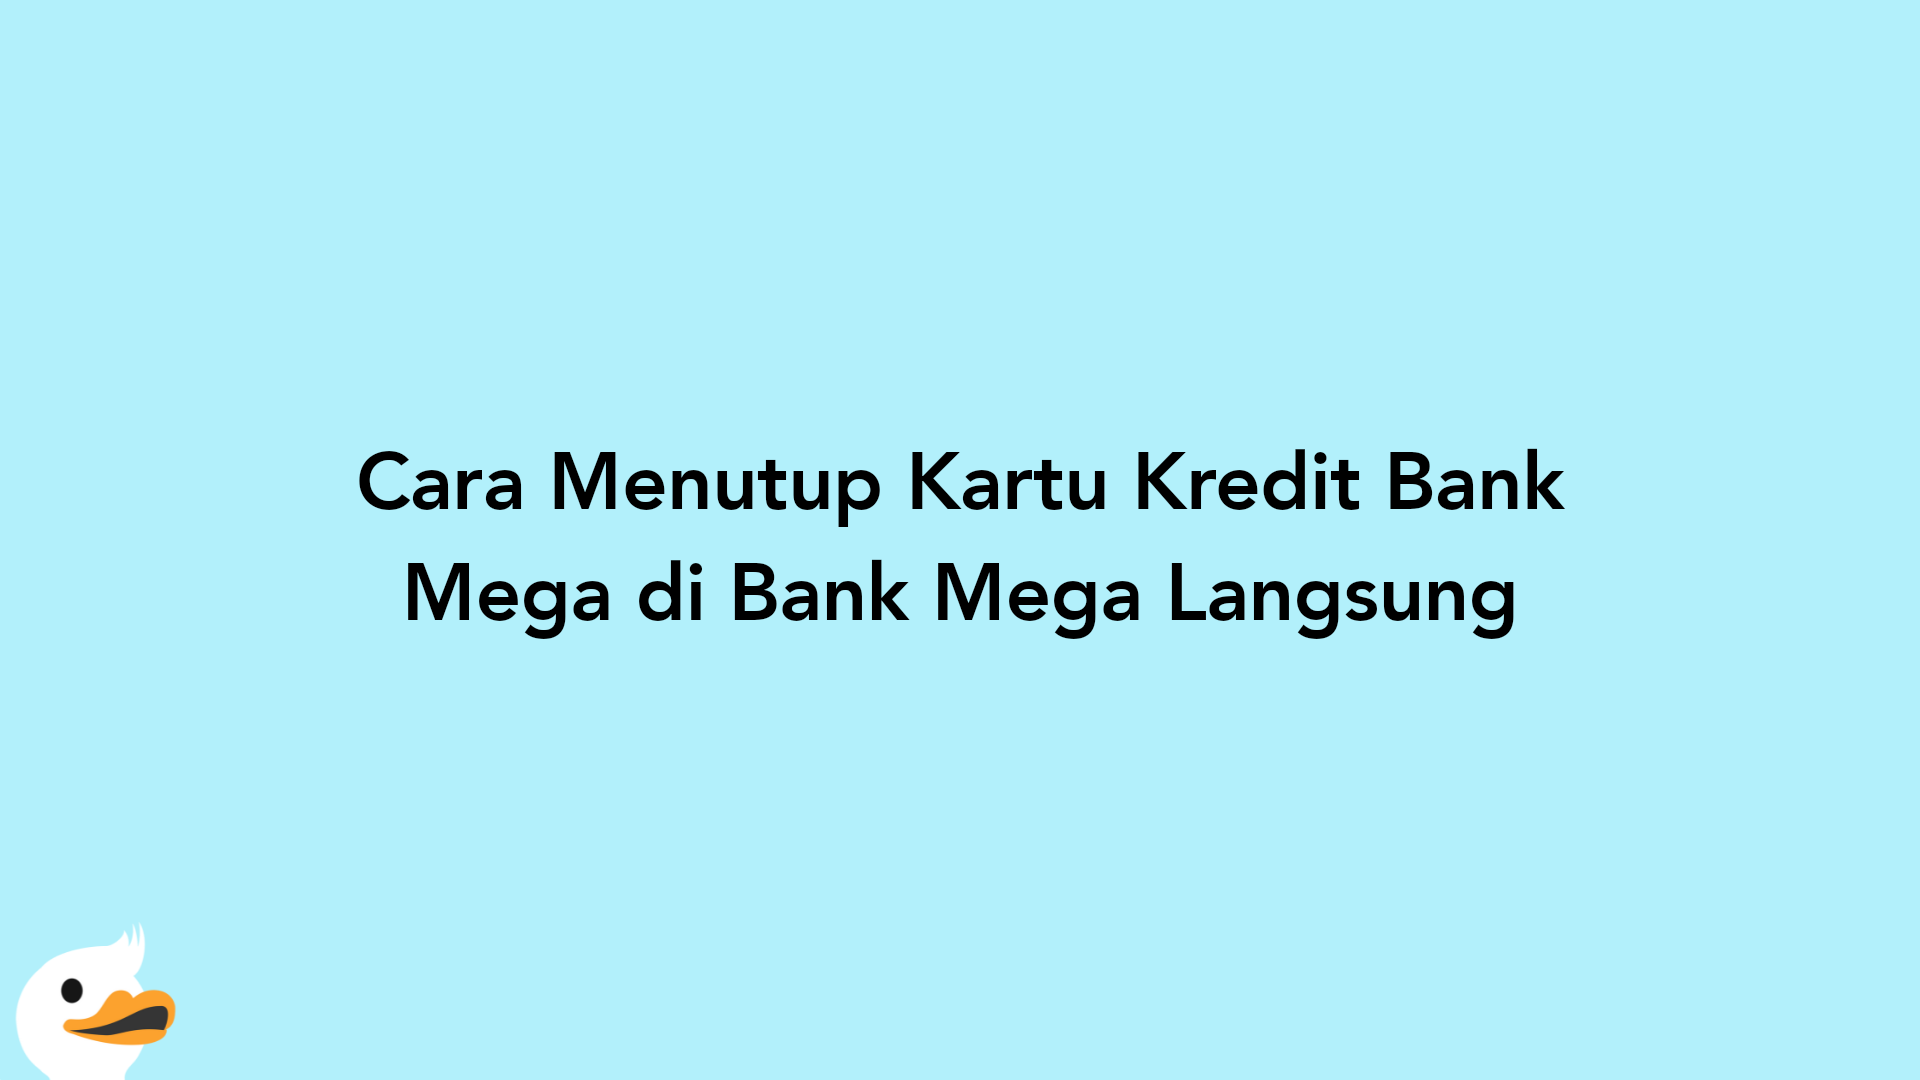 Cara Menutup Kartu Kredit Bank Mega di Bank Mega Langsung